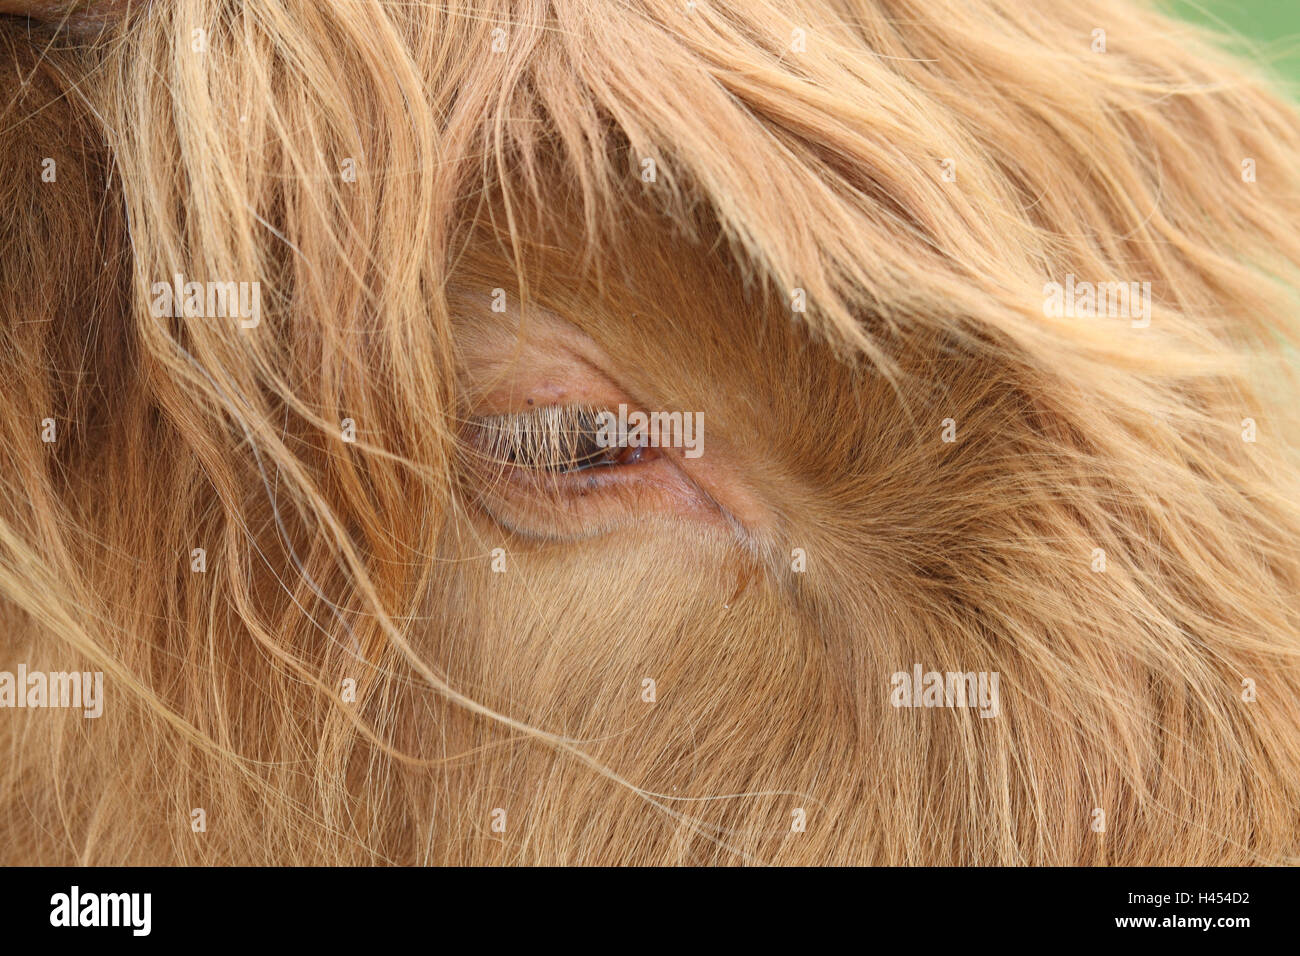 Scottish highland cattle, head, eye, close up, Stock Photo